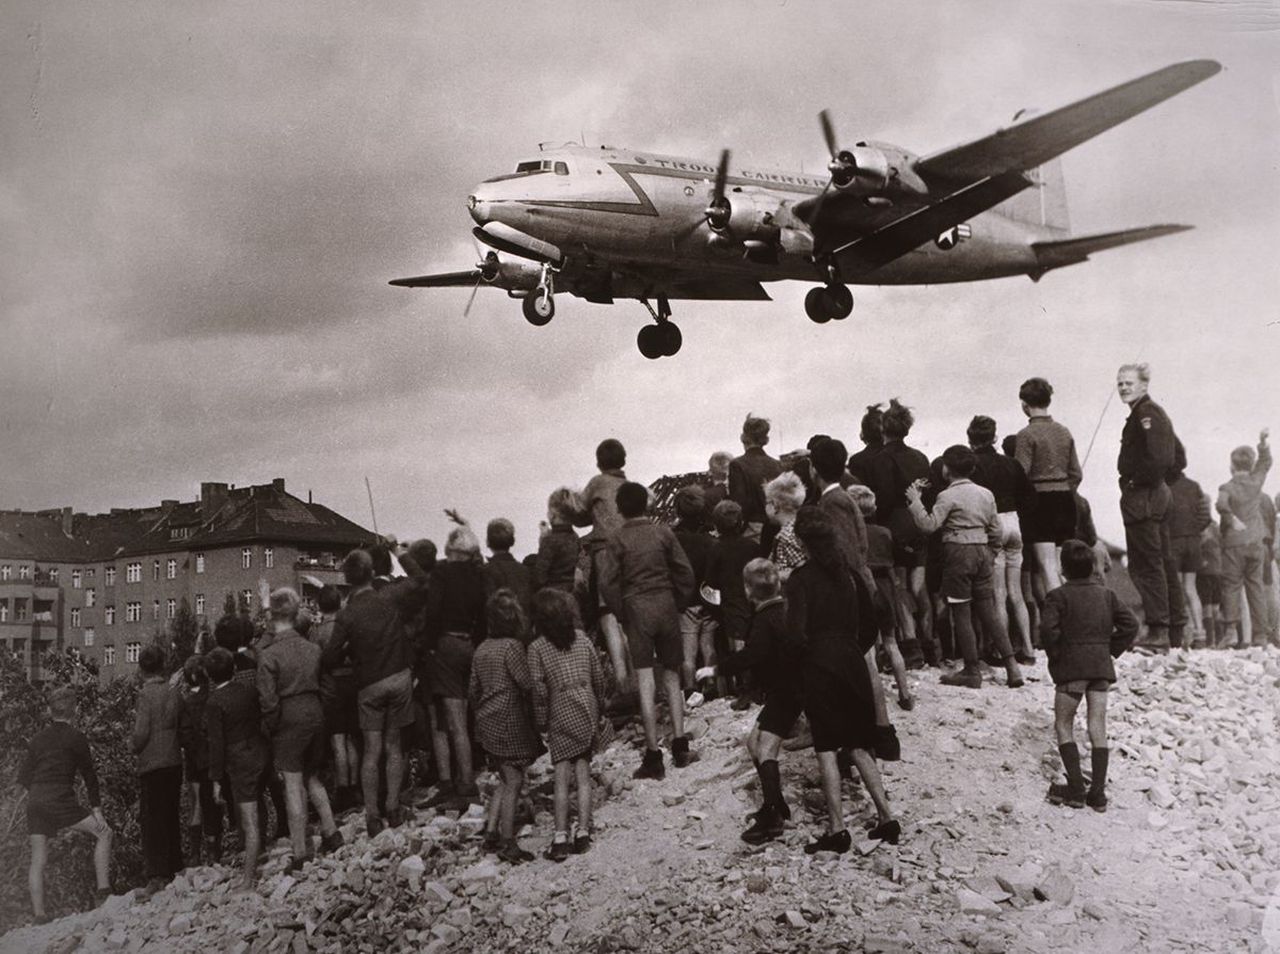 Eine Gruppe von Menschen, auf einem Schuttberg stehend, schauen einem im Landeanflug befindlichen Rosinenbomber entgegen. Links im Hintergrund ein mehrstöckiges Haus